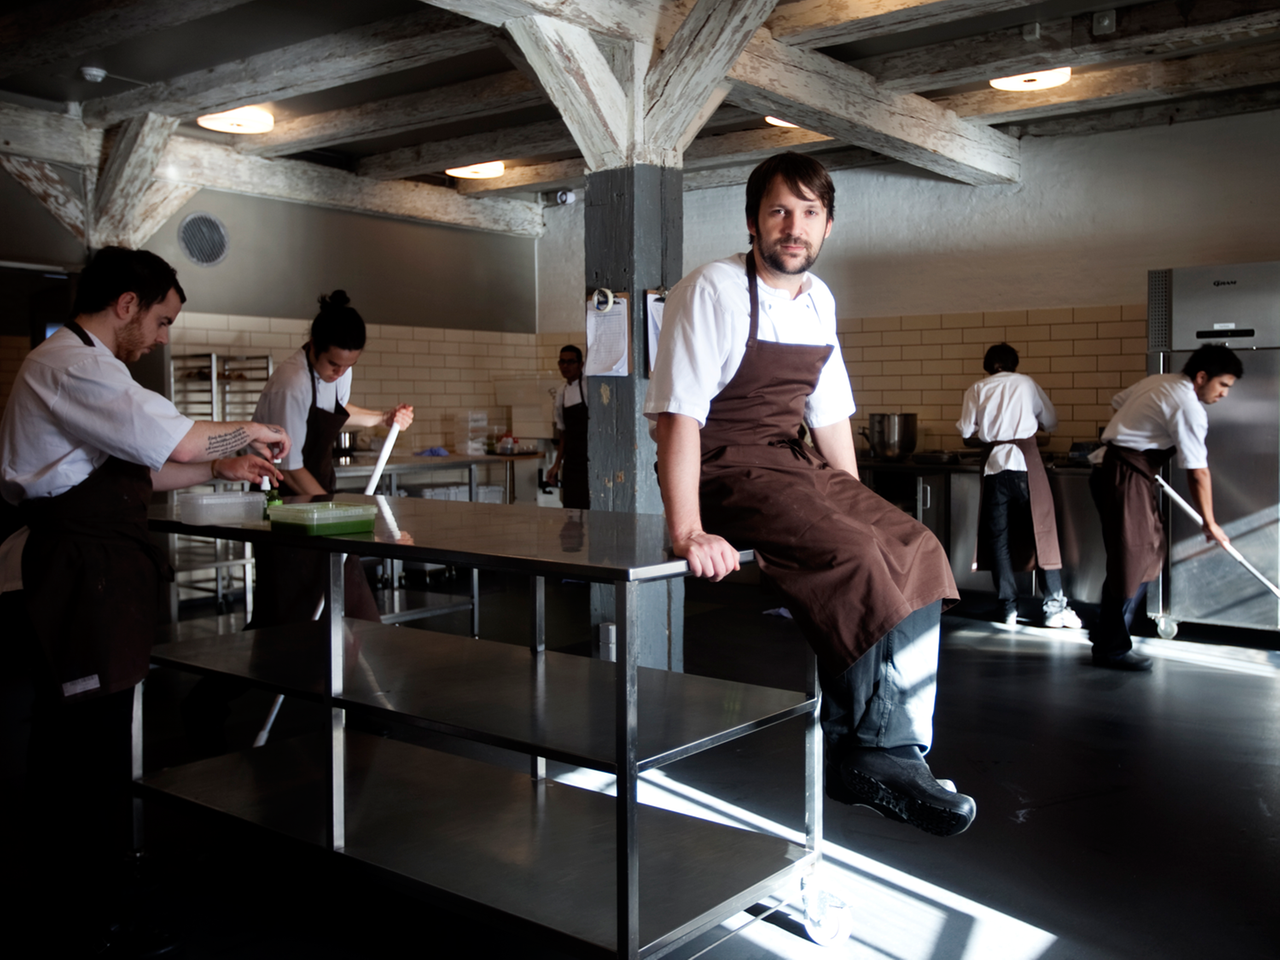 Das dänische Restaurant "Noma" mit Chefkoch Rene Redzepi (vorne) wurde bereits vier Mal zum besten Restaurant der Welt gekürt.